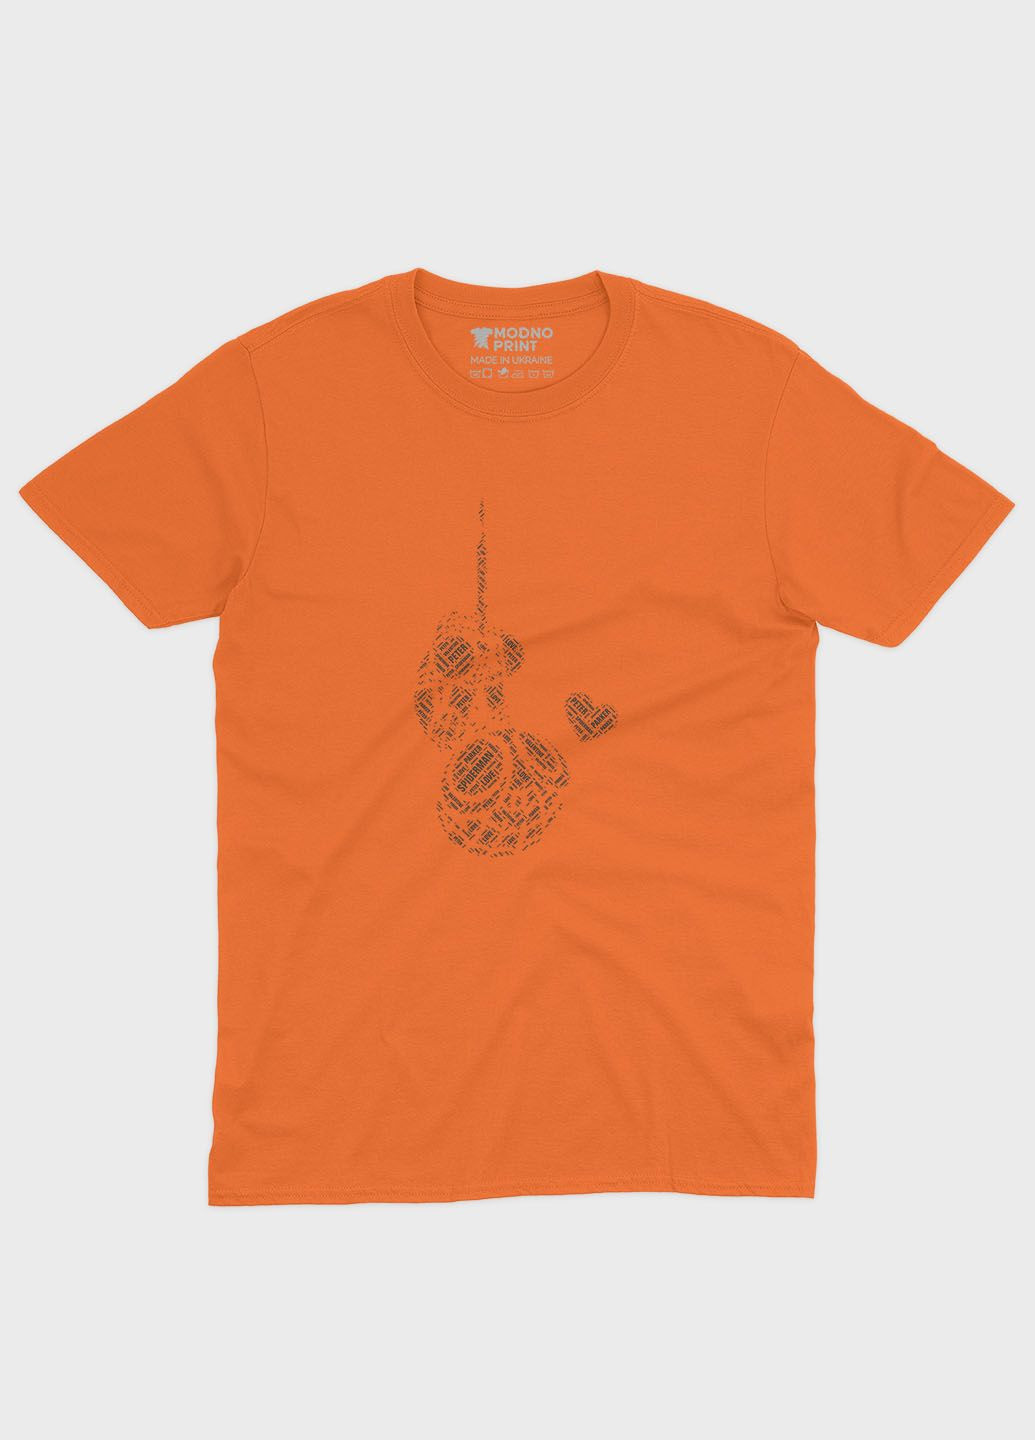 Оранжевая демисезонная футболка для девочки с принтом супергероя - человек-паук (ts001-1-ora-006-014-001-g) Modno